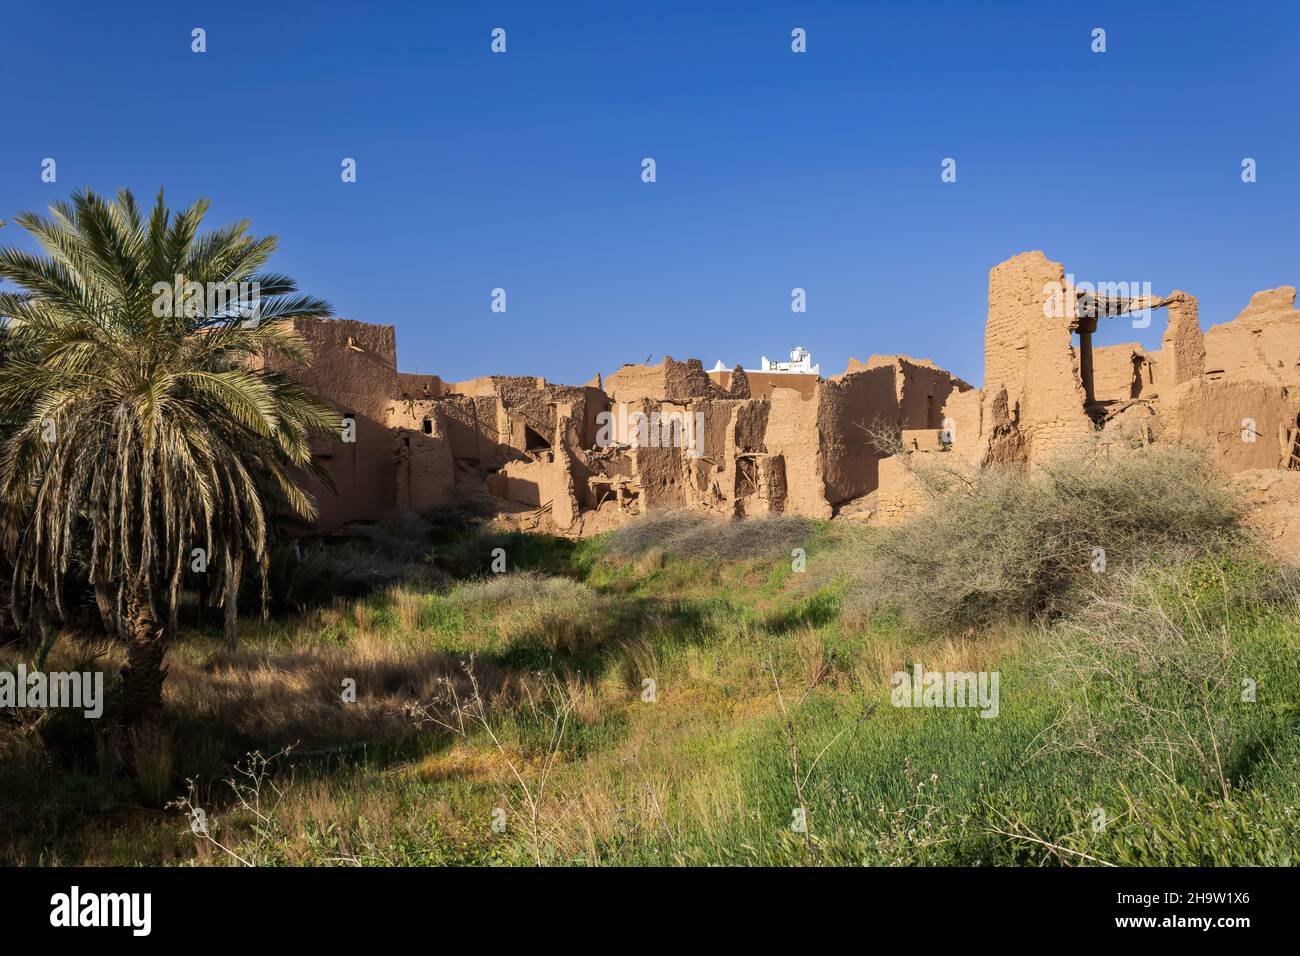 Rovine della tradizionale architettura araba di mattoni di fango a Ushaiqer, Arabia Saudita Foto Stock